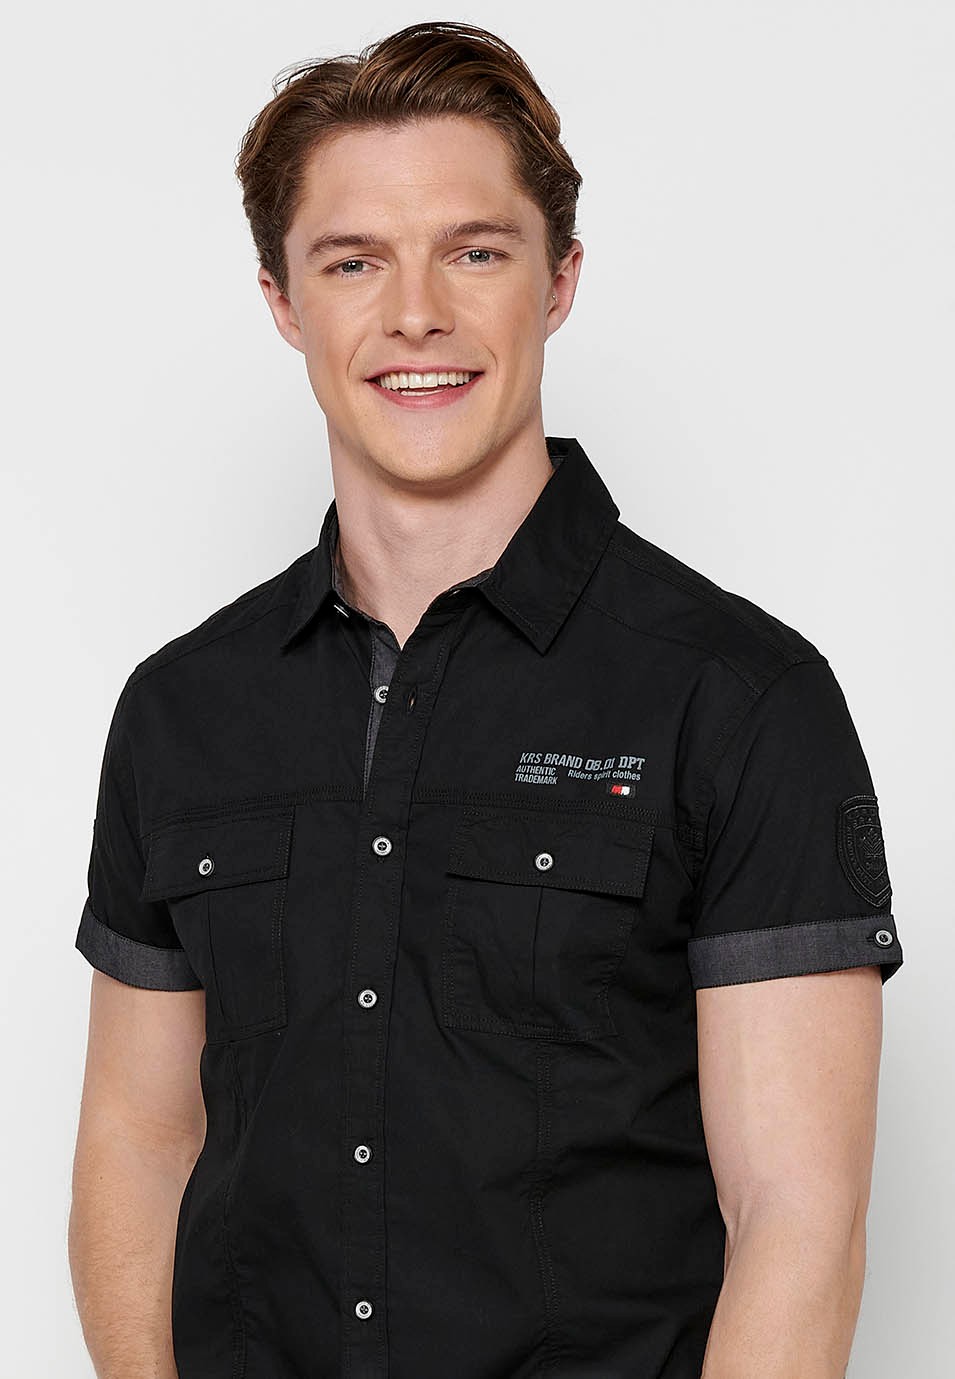 Kurzärmliges Baumwollhemd mit Knopfverschluss vorne und Pattentaschen vorne in der Farbe schwarz für Herren